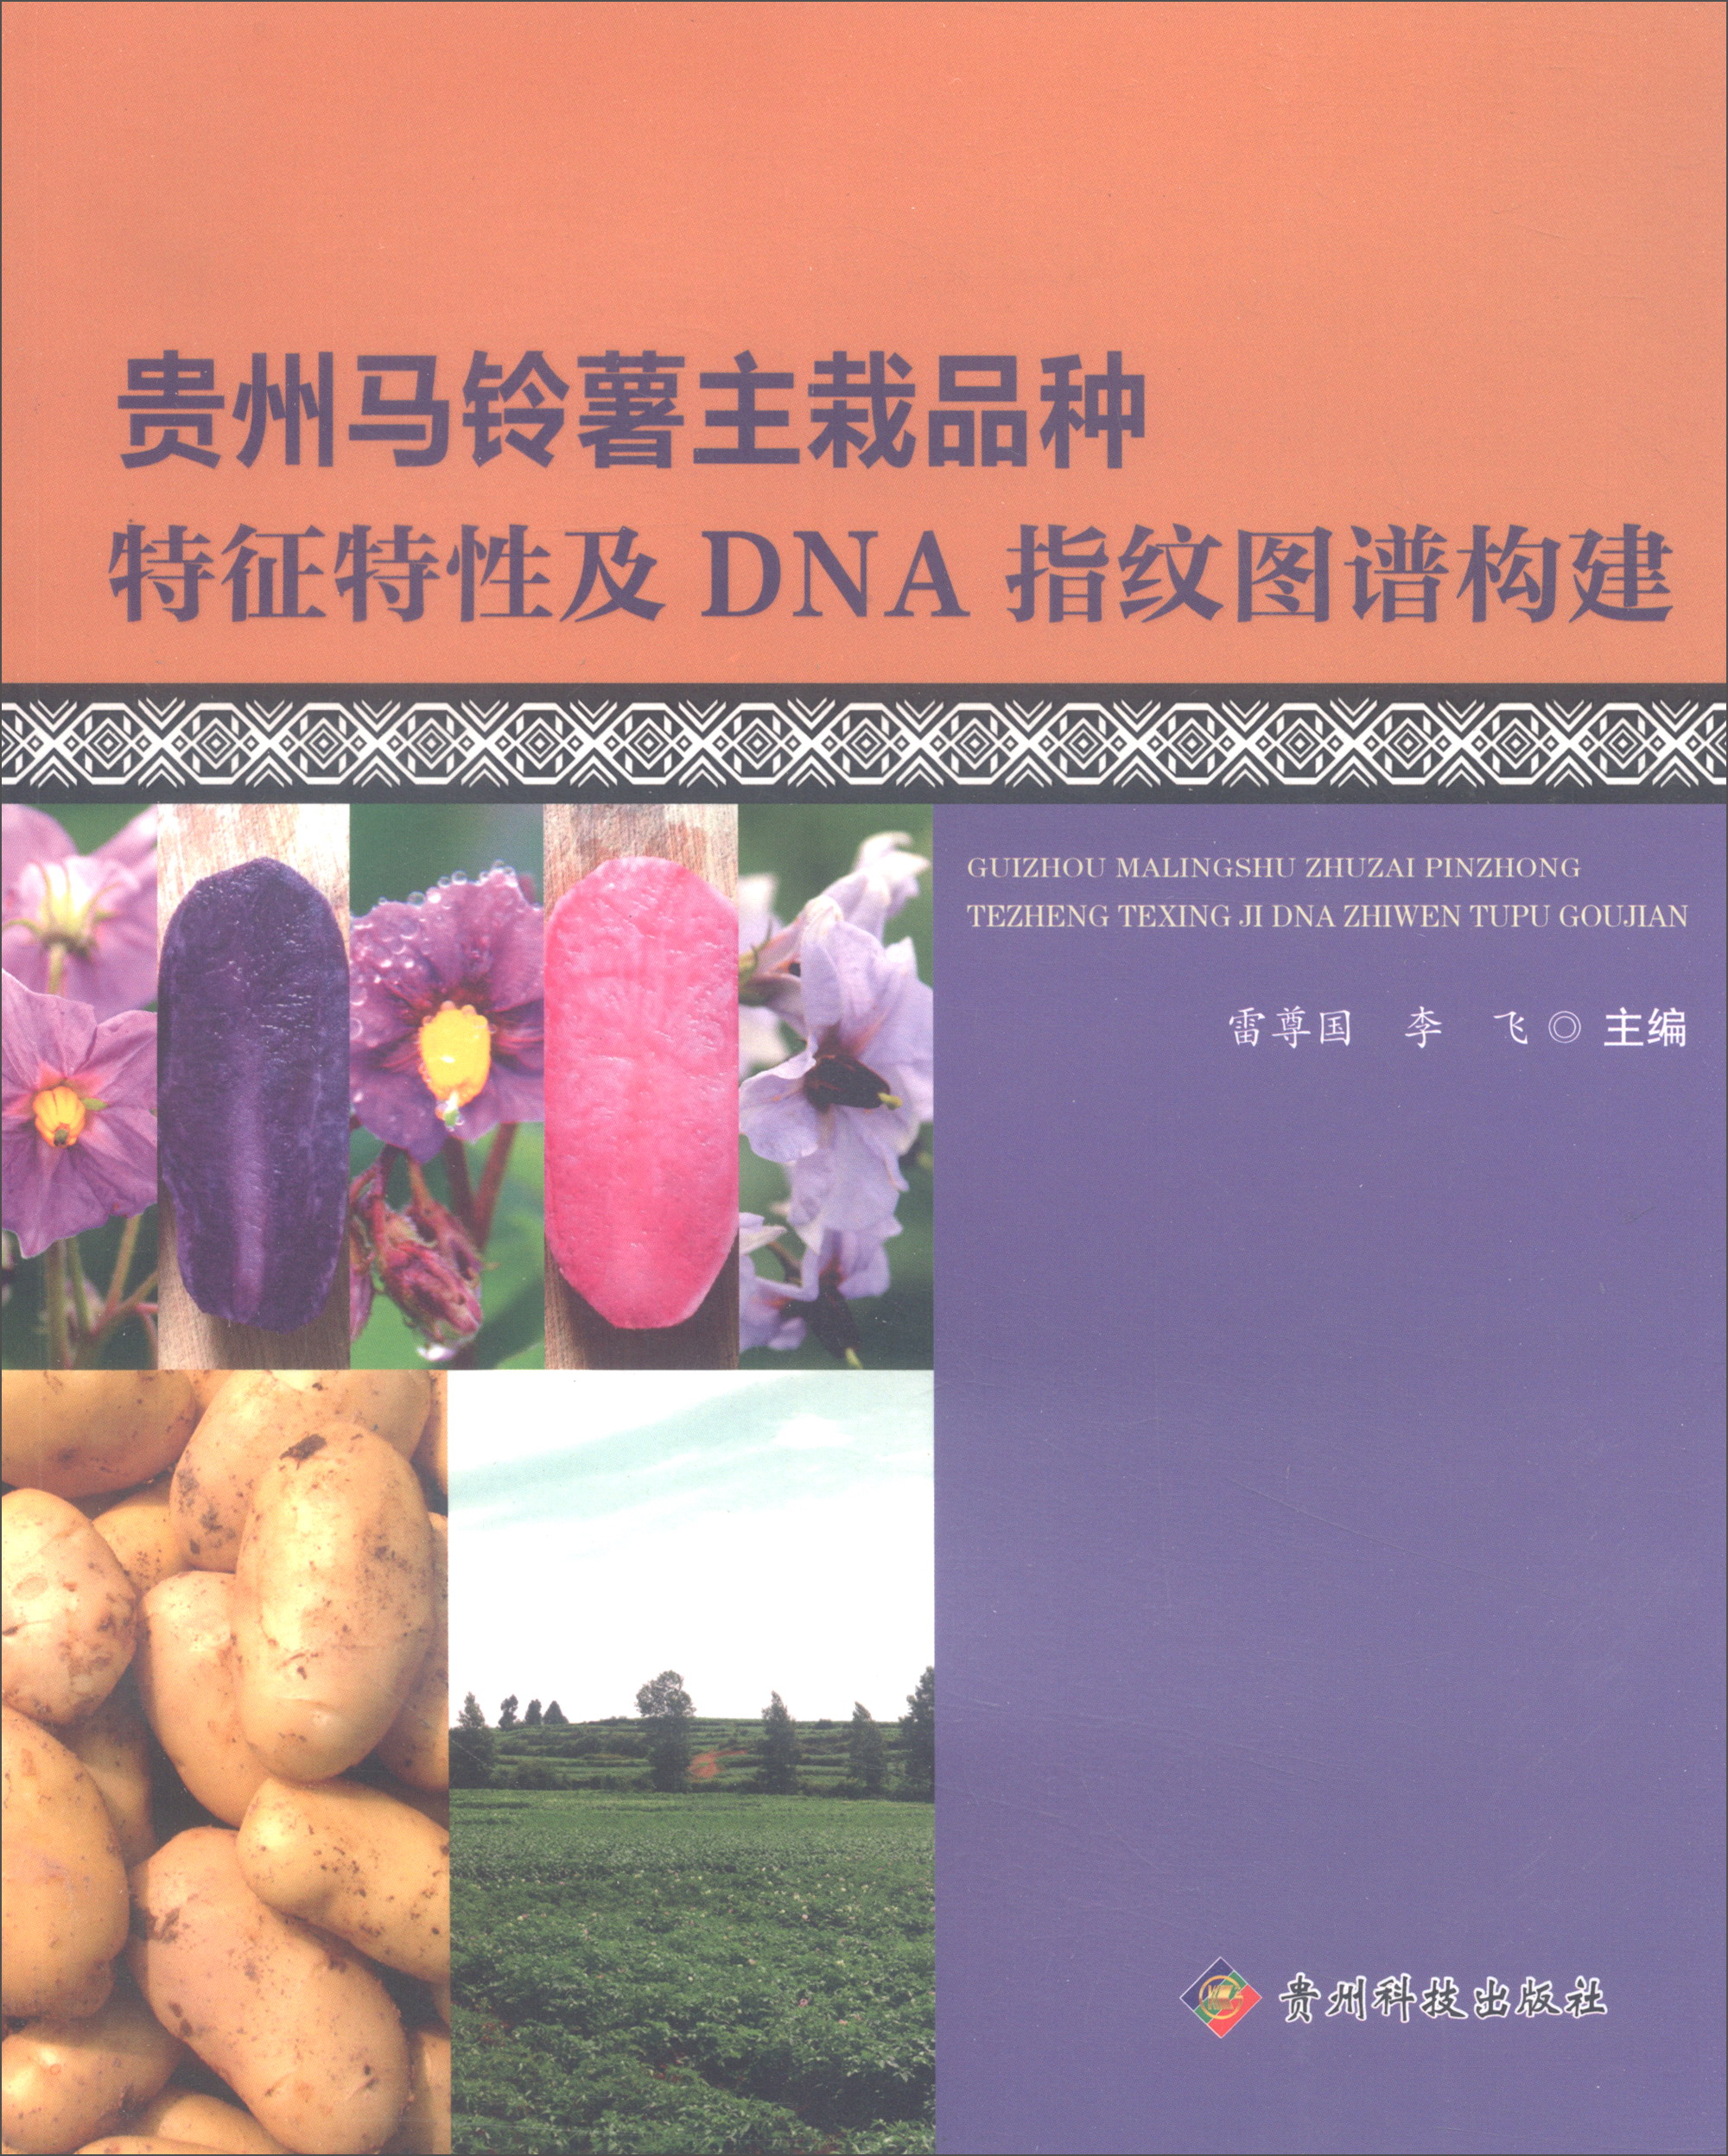 贵州马铃薯主栽品种特征特性及DNA指纹图谱构建 mobi格式下载